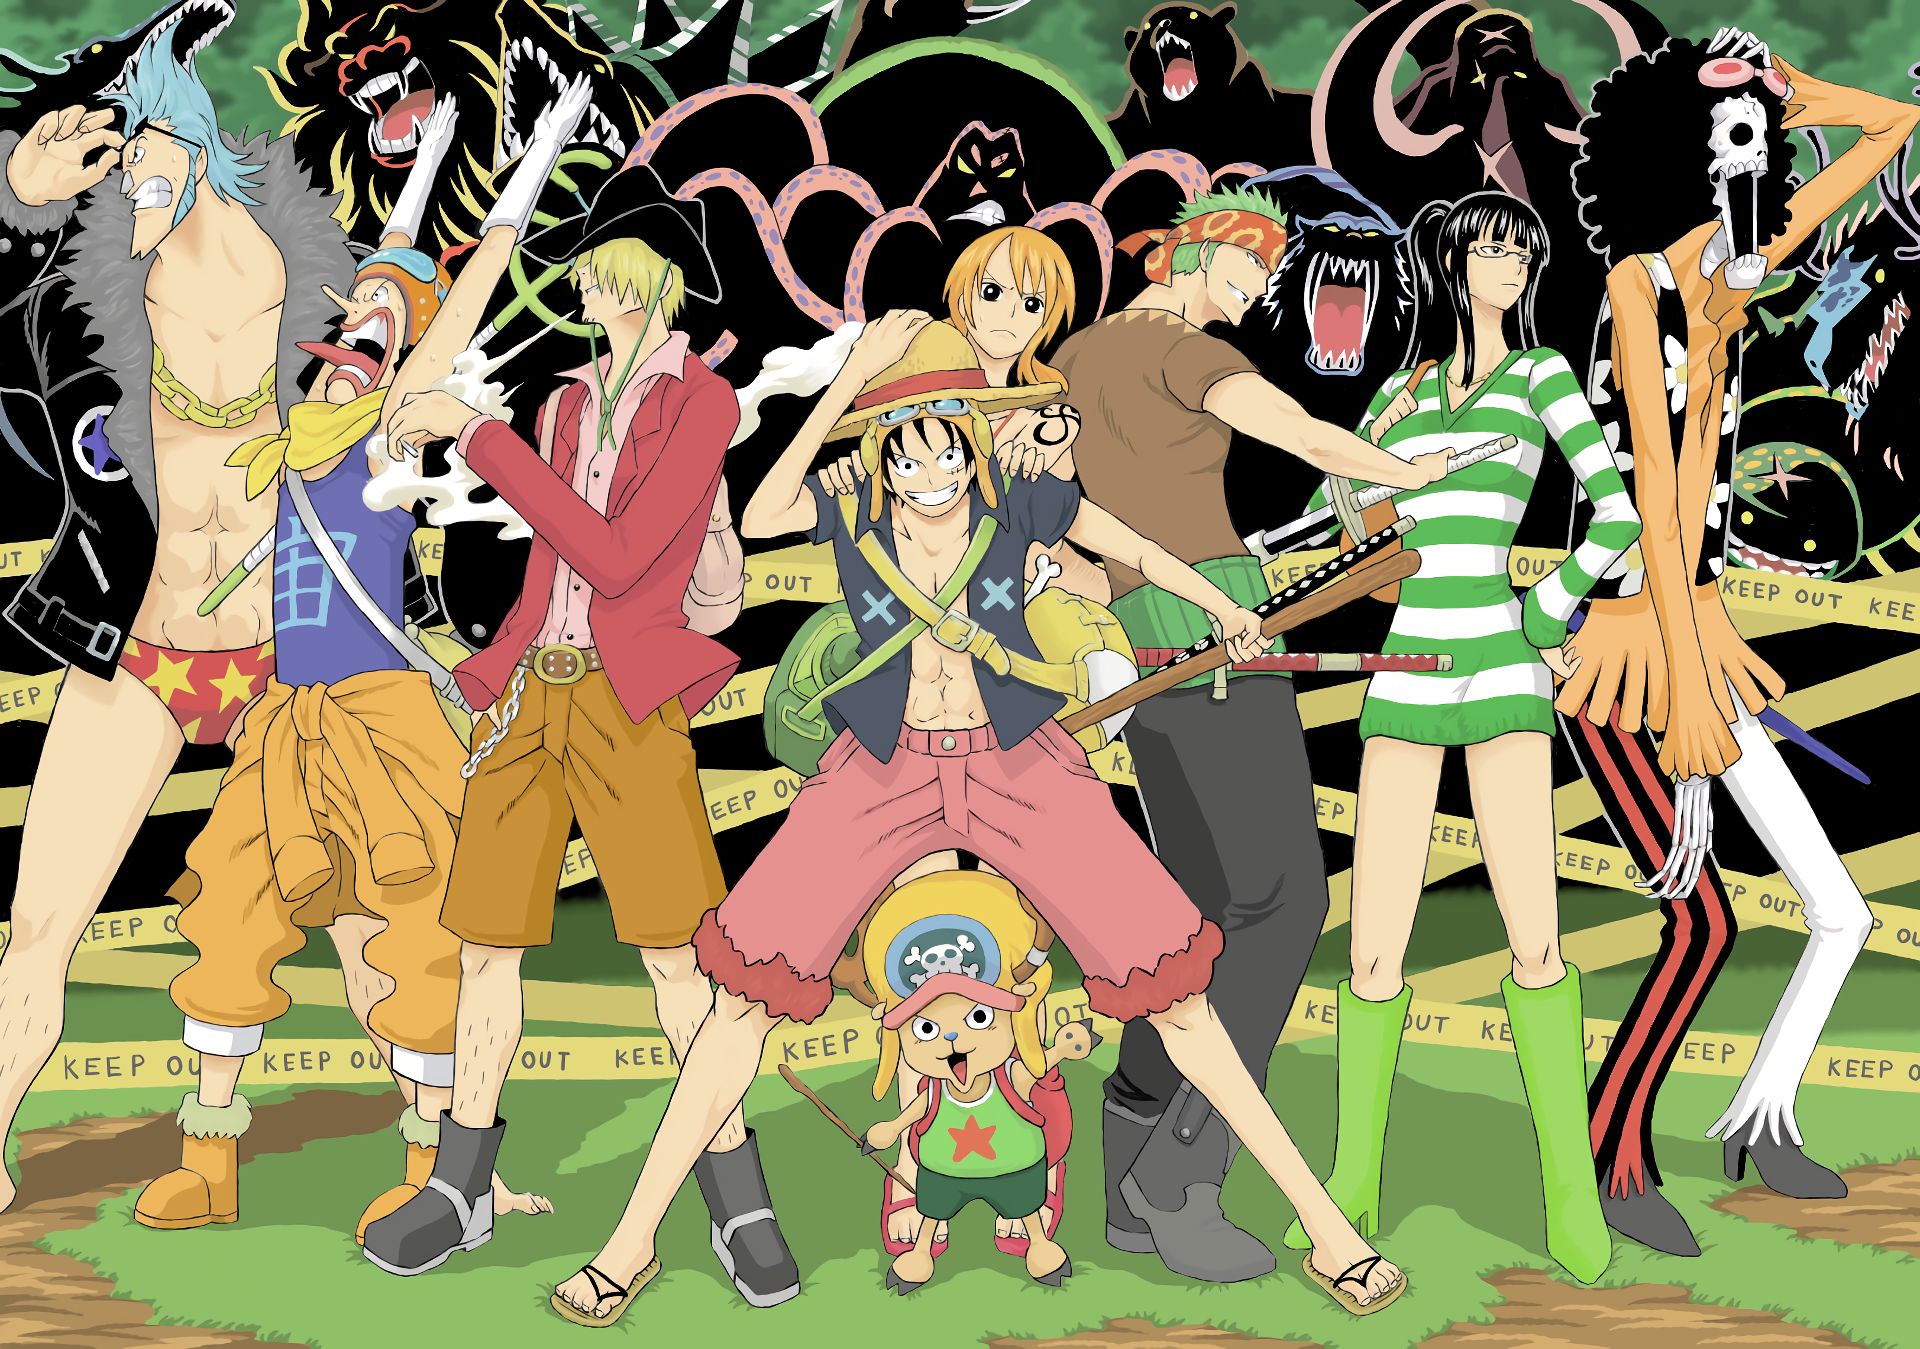 Free download wallpaper Anime, One Piece, Tony Tony Chopper, Usopp (One Piece), Roronoa Zoro, Monkey D Luffy, Nami (One Piece), Sanji (One Piece), Brook (One Piece), Franky (One Piece) on your PC desktop